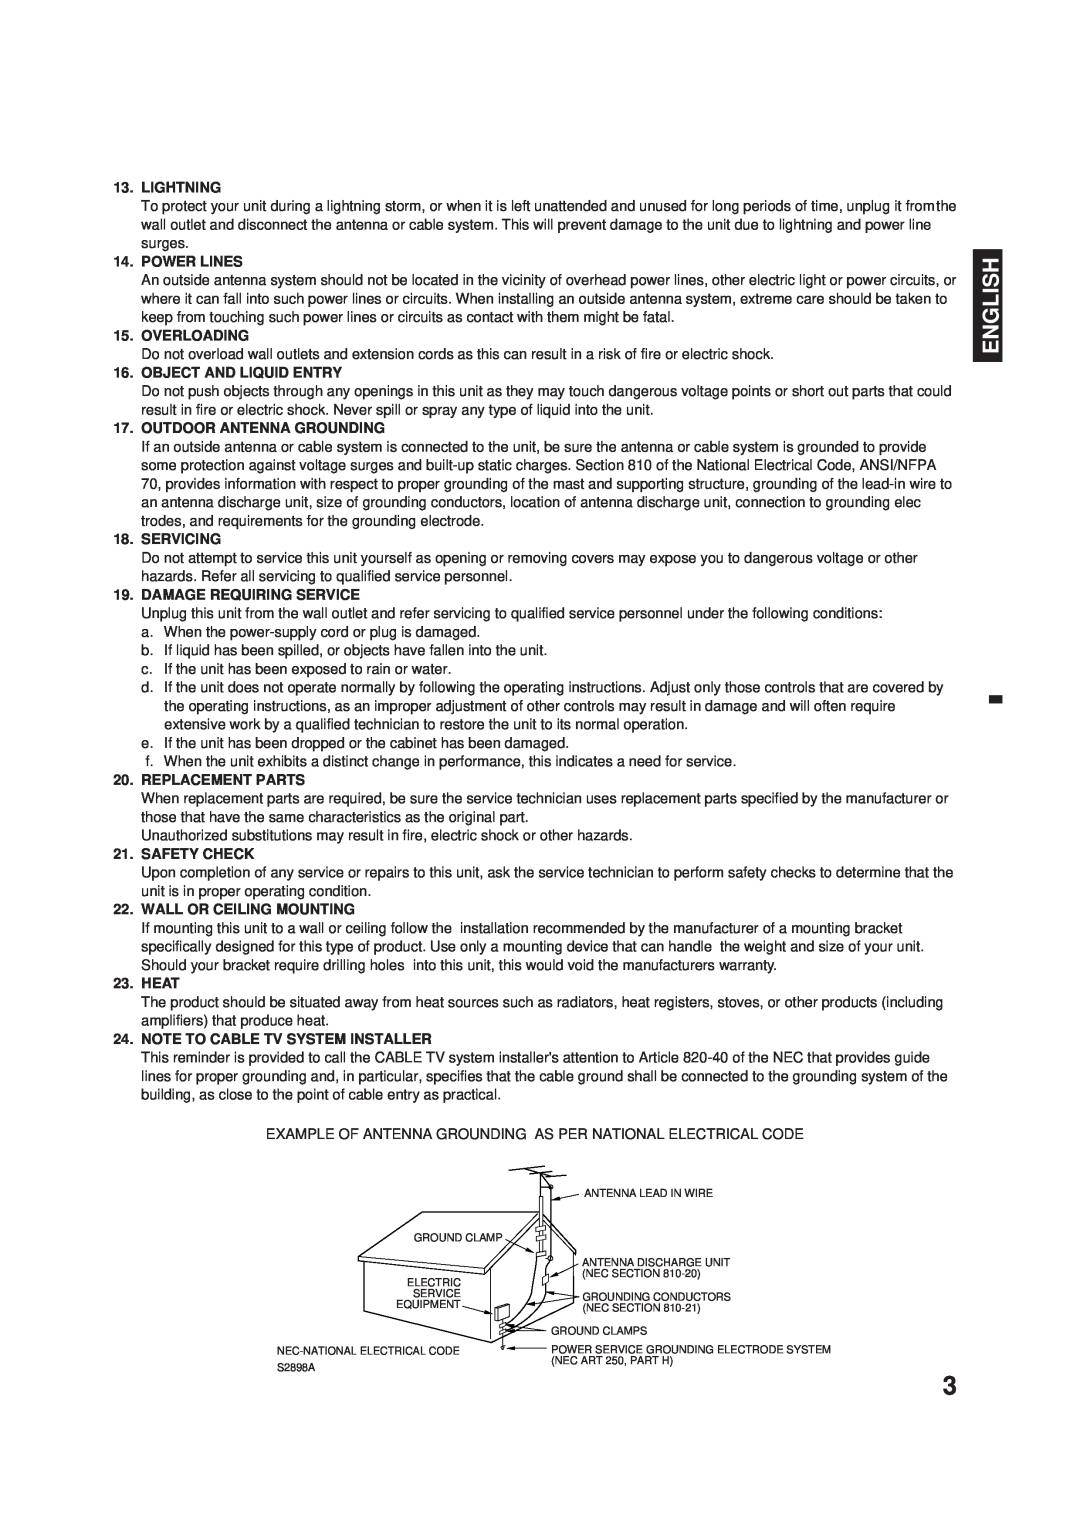 Memorex DT1900-C manual English, Lightning 